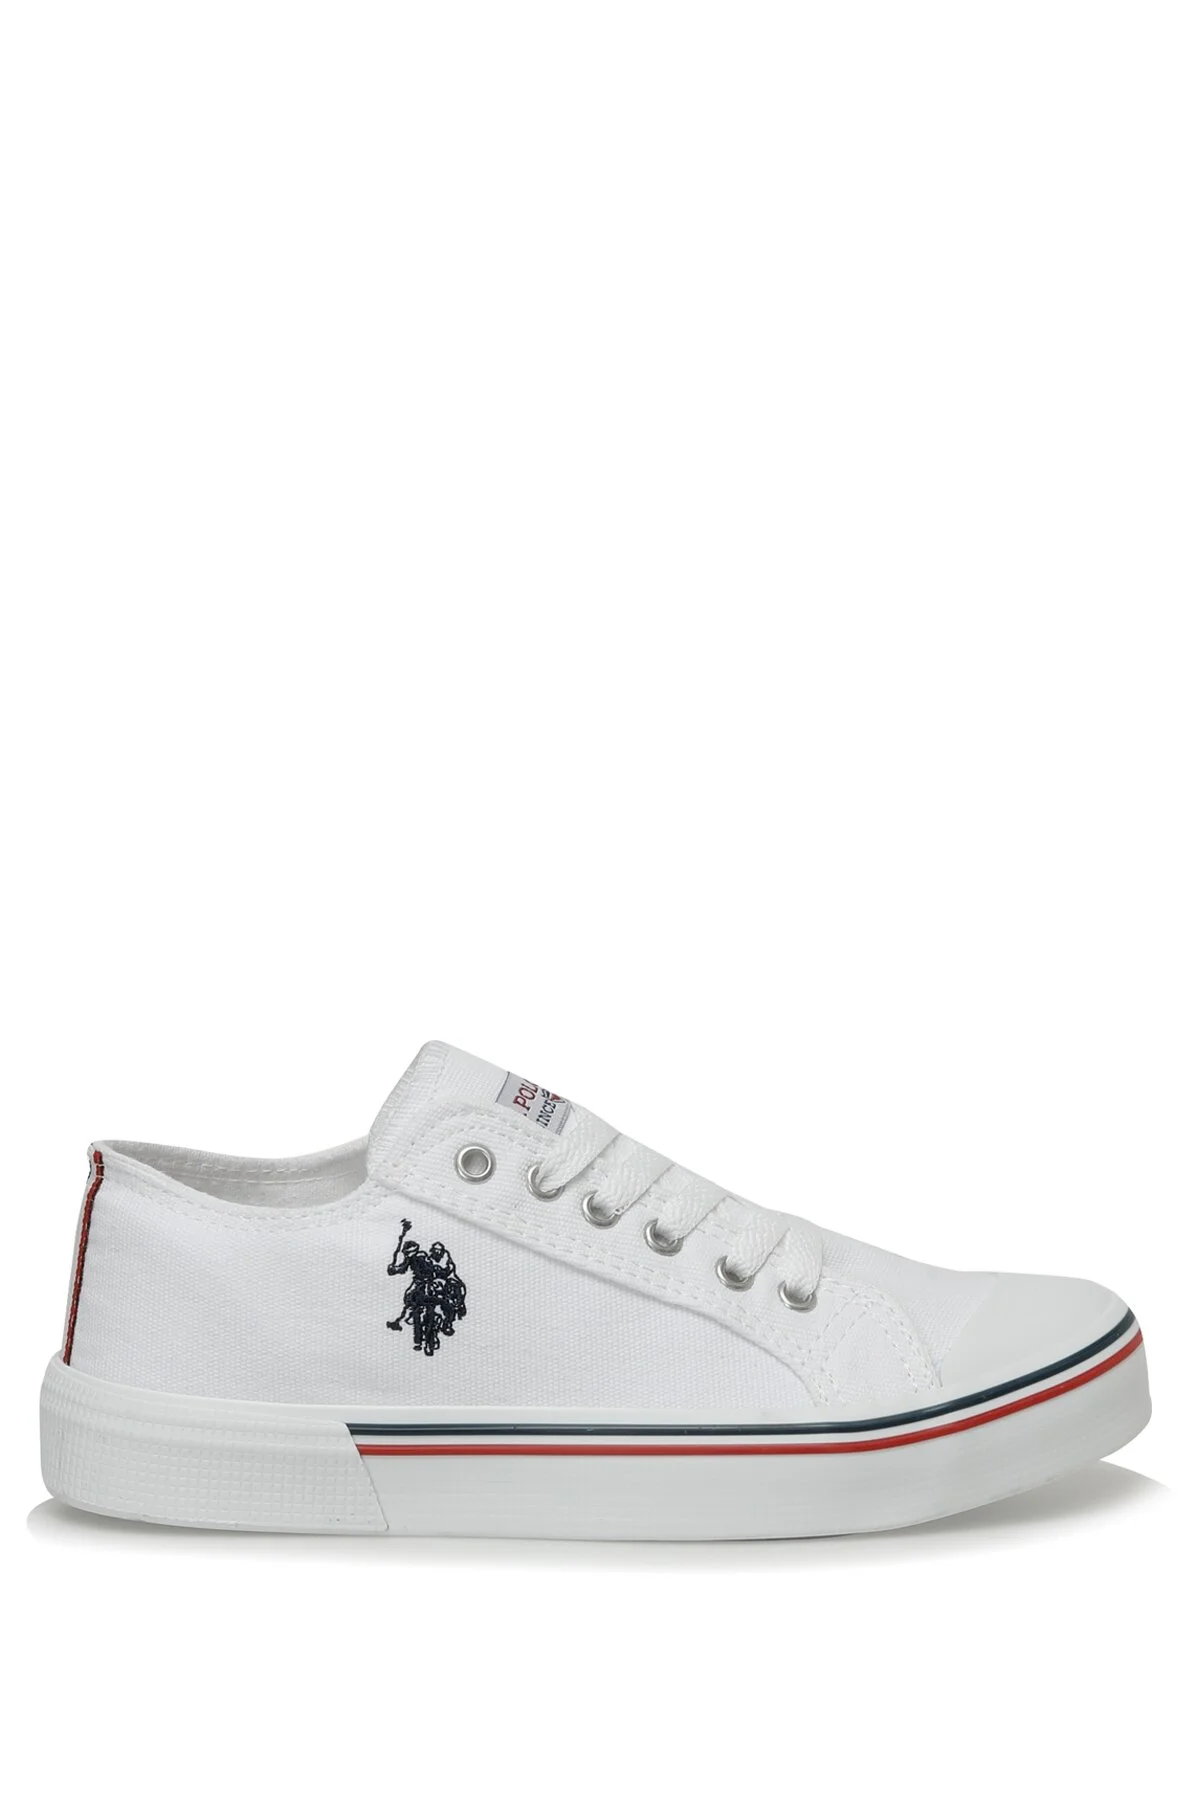 U.S. Polo Assn - PENELOPE 3FX Beyaz Kadın Sneaker-Beyaz